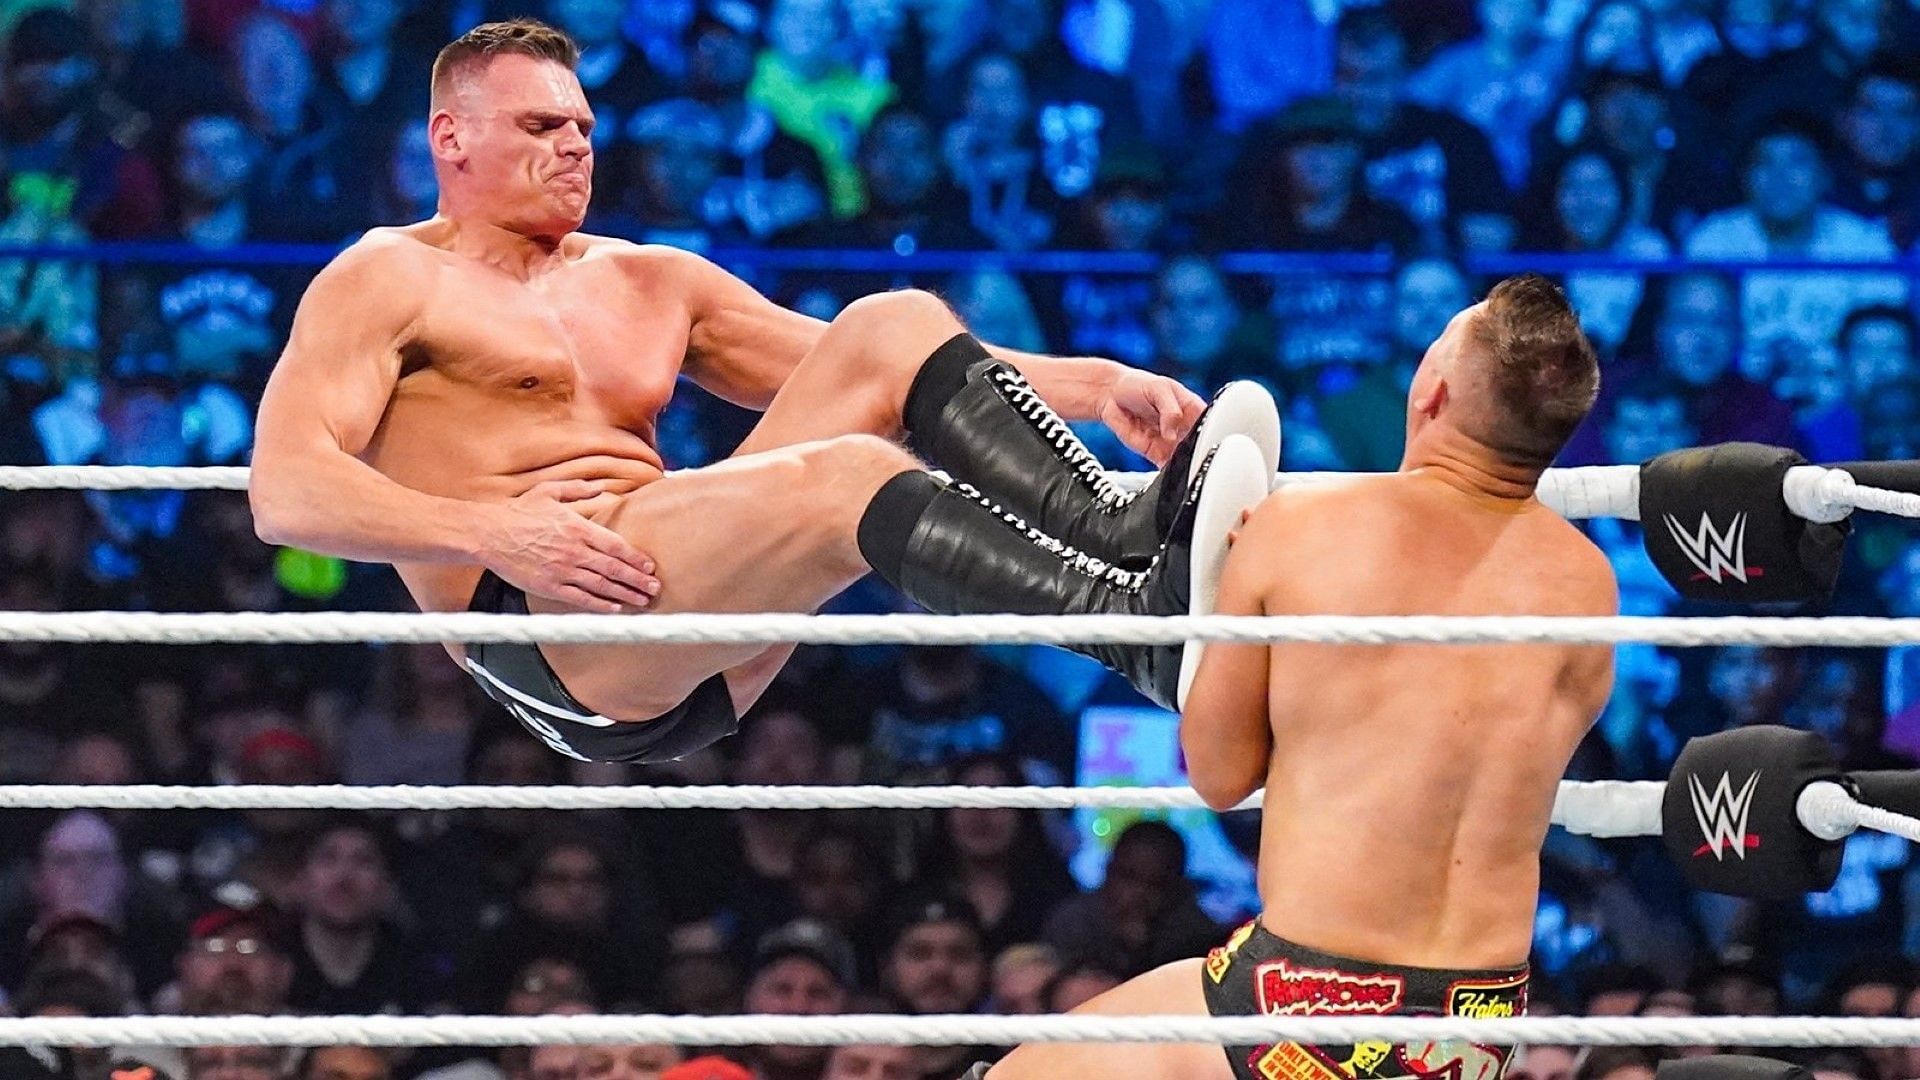 GUNTHER dropkicks The Miz at WWE Survivor Series